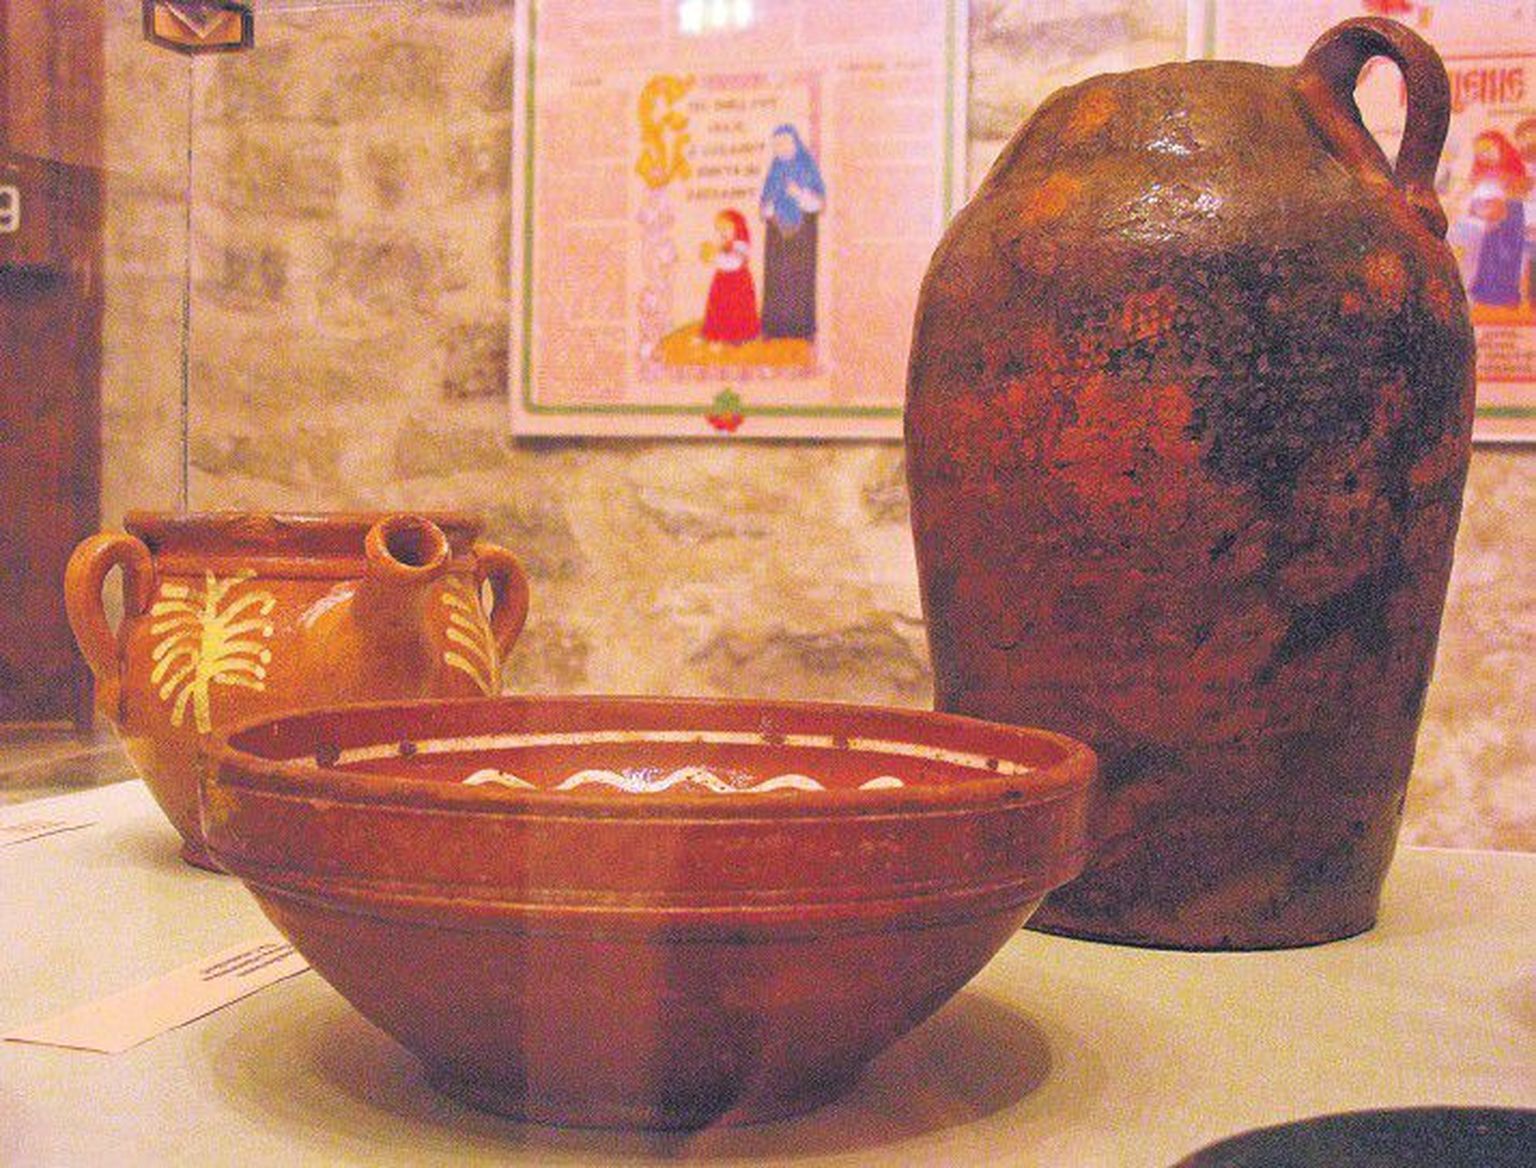 Cтаринная посуда, в которой староверы Причудья издавна готовили свои традиционные блюда.